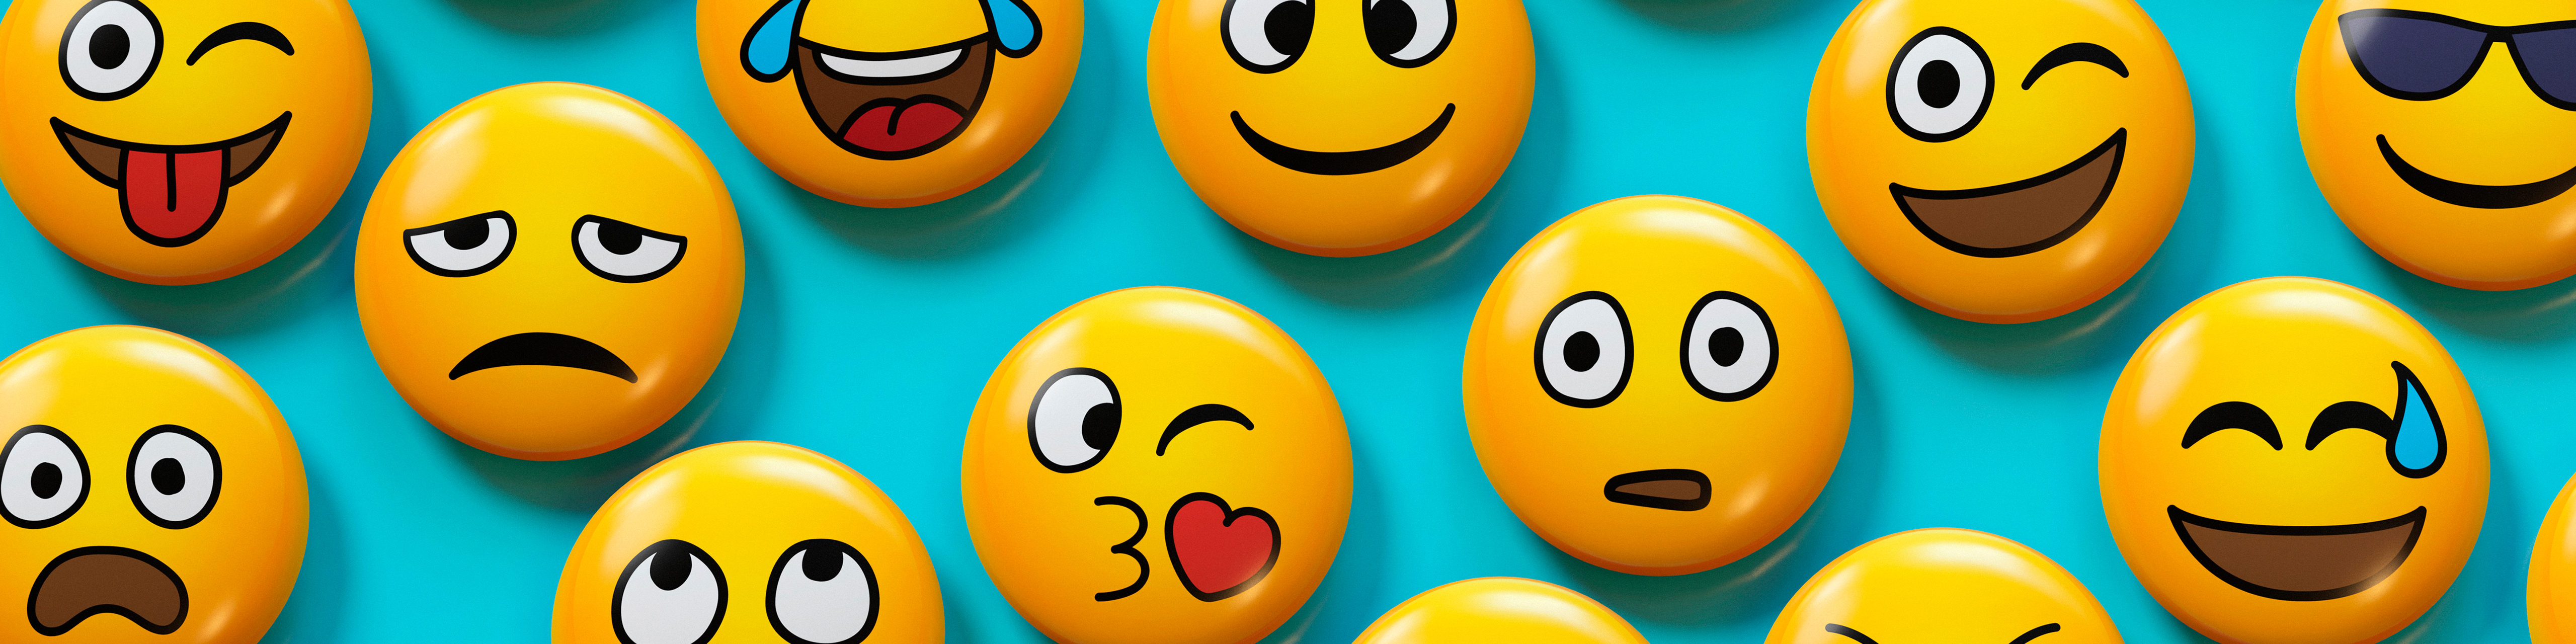 Emoji badges on blue background 